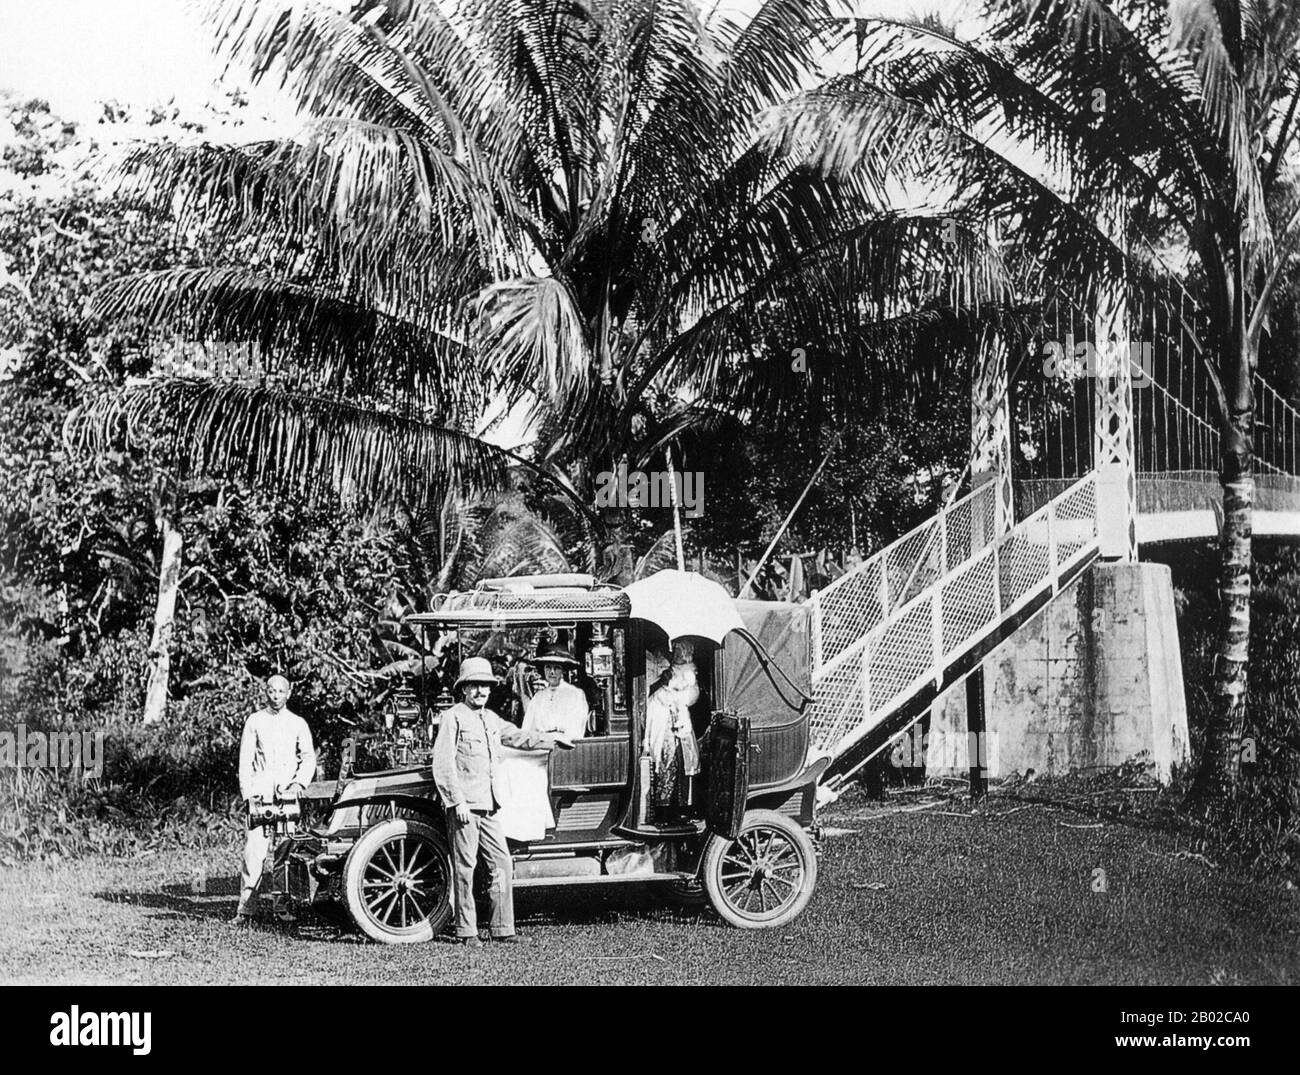 La Malaisie a ses origines dans les Royaumes malais présents dans la région qui, à partir du XVIIIe siècle, est devenue soumise à l'Empire britannique. Les premiers territoires britanniques étaient connus sous le nom de Straits colonies, dont l'établissement a été suivi par les royaumes malais devenant des protectorats britanniques. Les territoires de la Malaisie péninsulaire ont été unifiés pour la première fois comme Union malaisienne en 1946. Même si les Britanniques étaient initialement réticents à établir une présence coloniale à Malaya, l'augmentation des investissements dans les mines d'étain a entraîné un afflux important d'immigrants chinois qui ont formé des groupes de clans rivaux alliés à Malay Banque D'Images